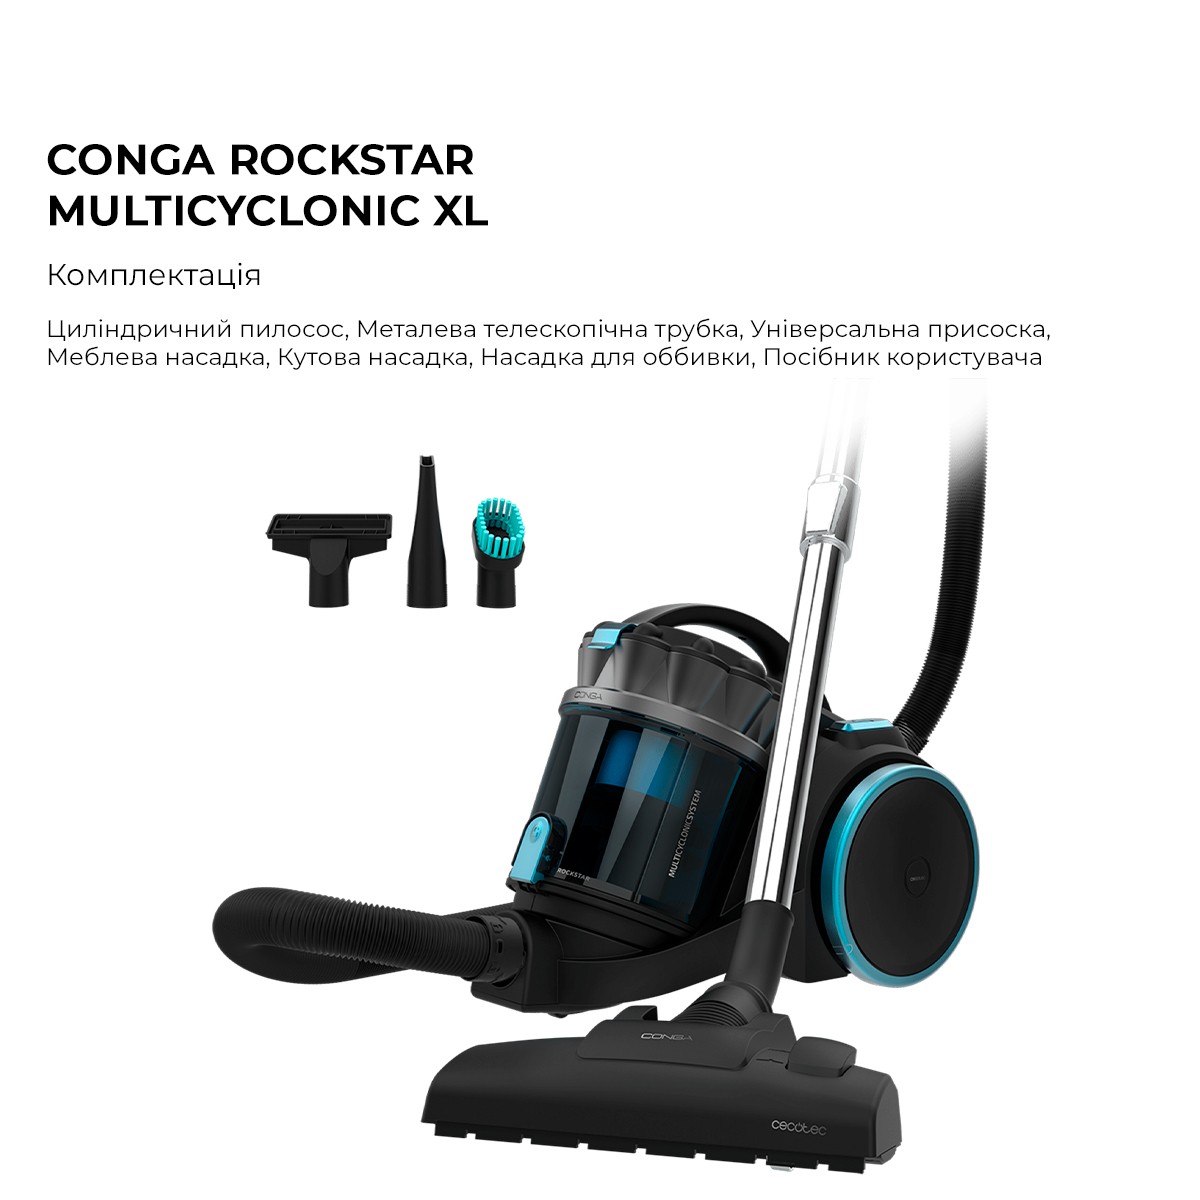 Пылесос Cecotec Conga Rockstar Multicyclonic XL (CCTC-08591) цена 3899 грн - фотография 2